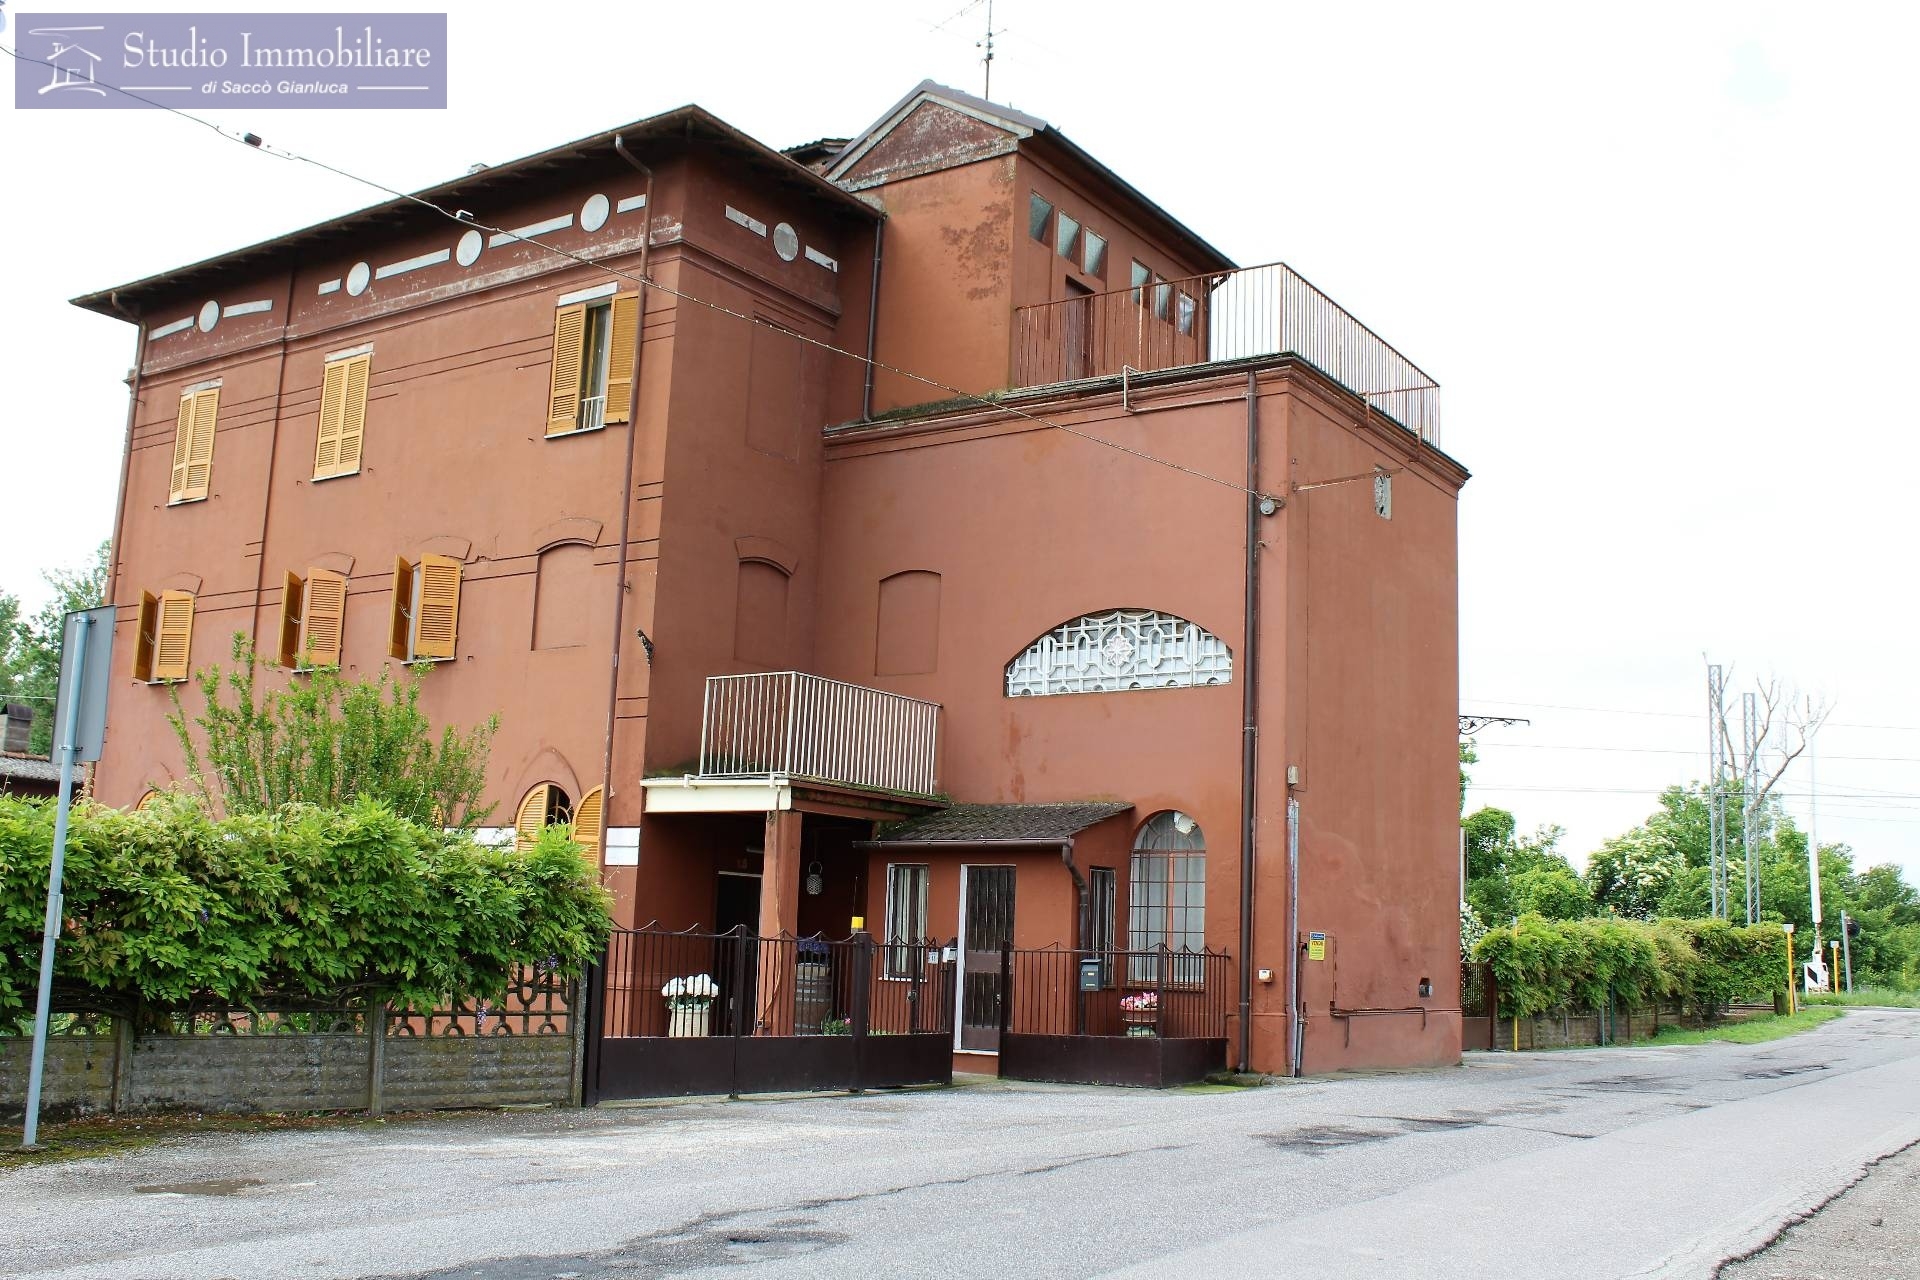 Soluzione Indipendente in vendita a Castelletto di Branduzzo, 12 locali, prezzo € 220.000 | CambioCasa.it